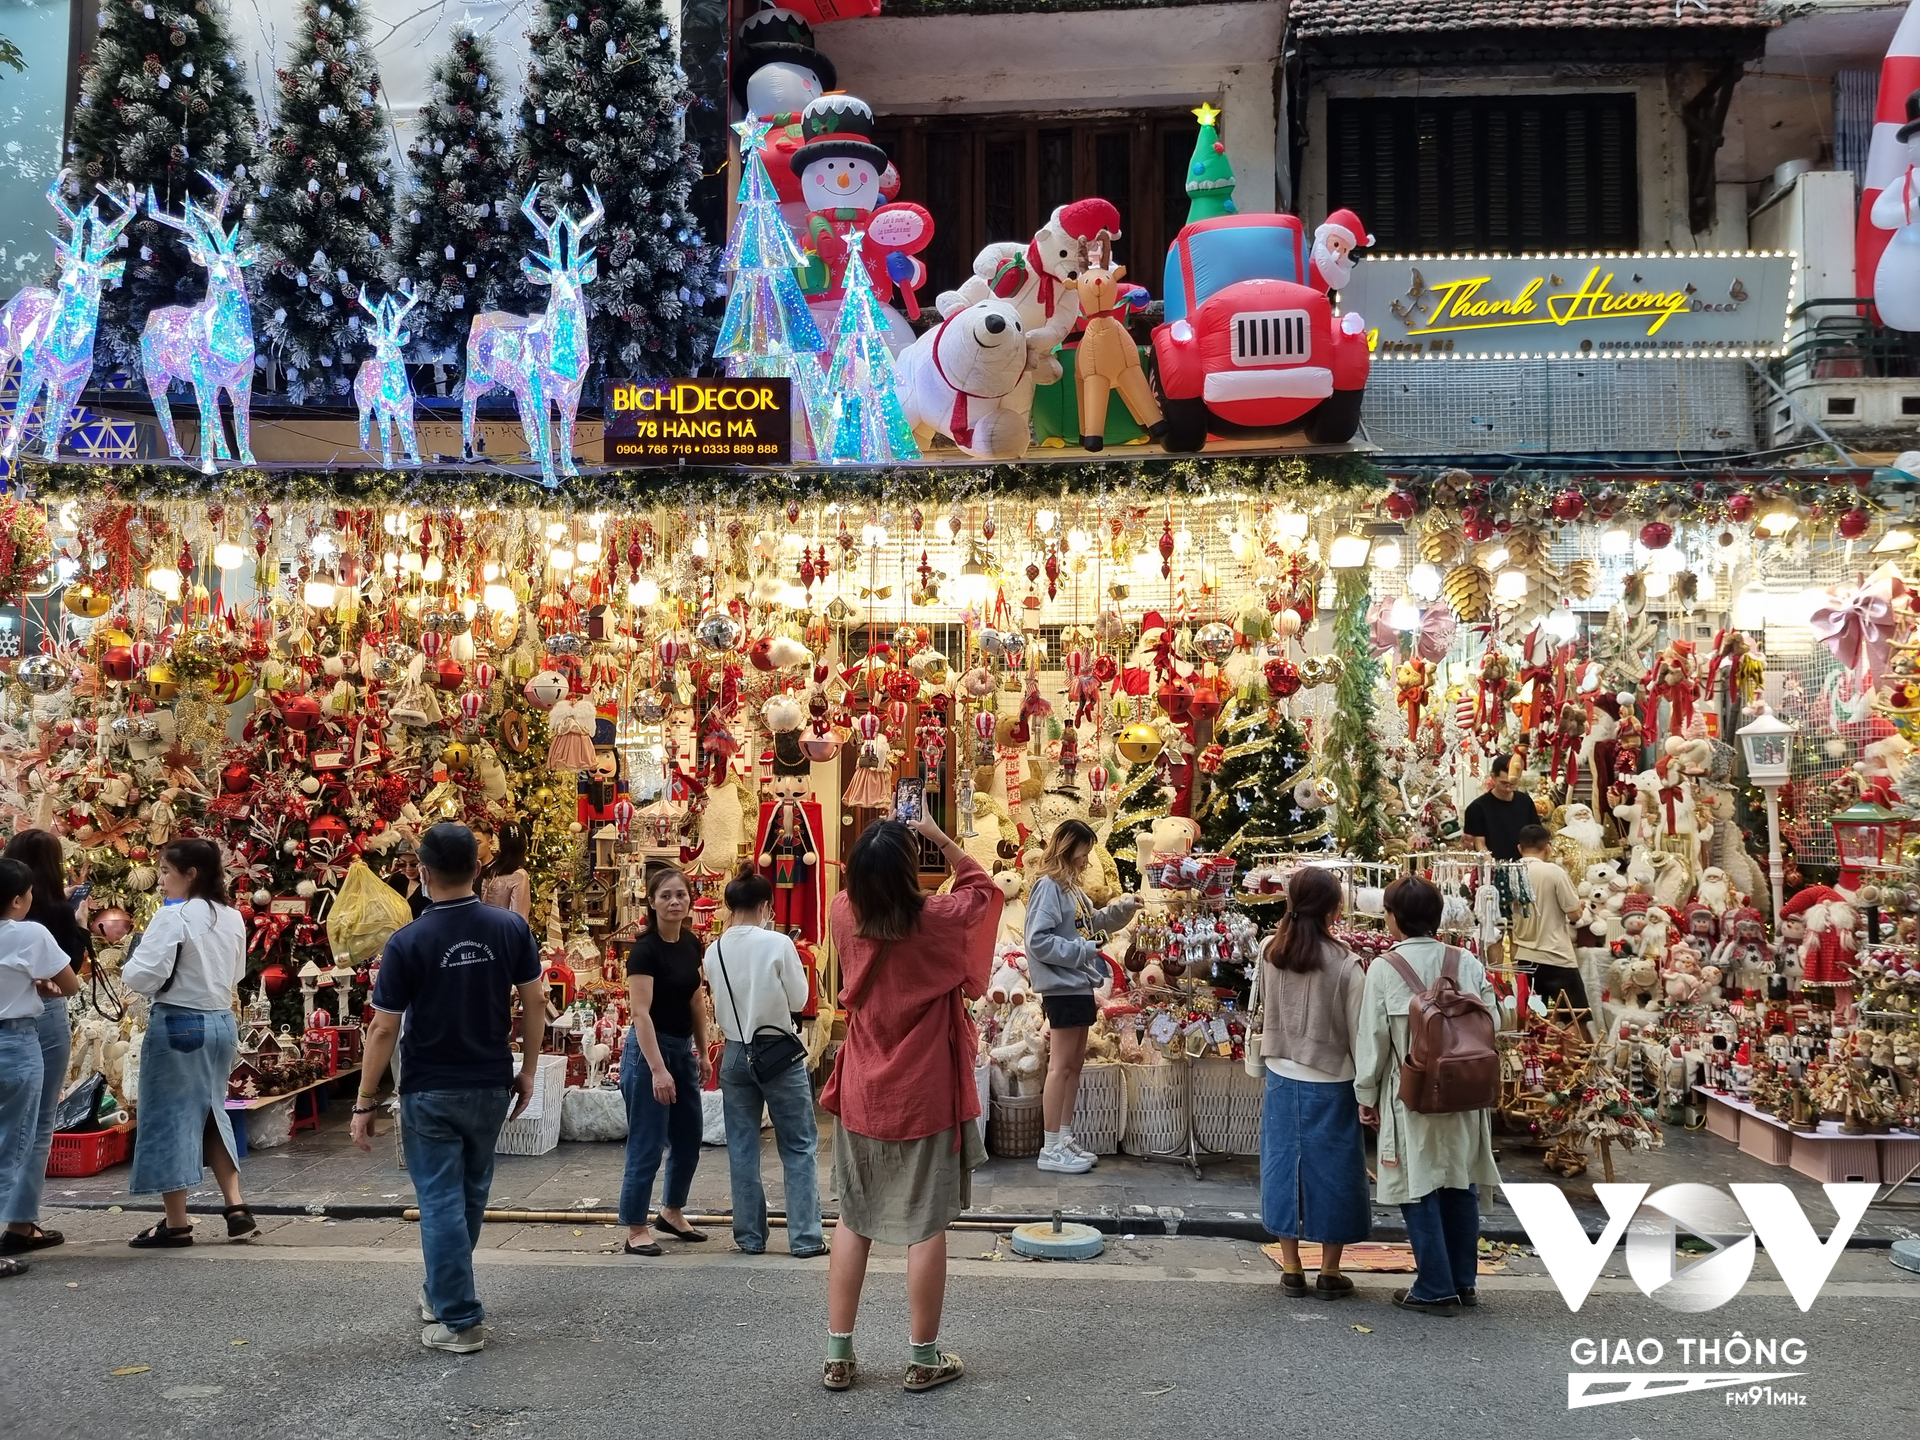 Phố Hàng Mã, quận Hoàn Kiếm, Hà Nội những ngày gần đây được trang hoàng rực rỡ khi Lễ Giáng sinh đã cận kề (Ảnh: Minh Hiếu)